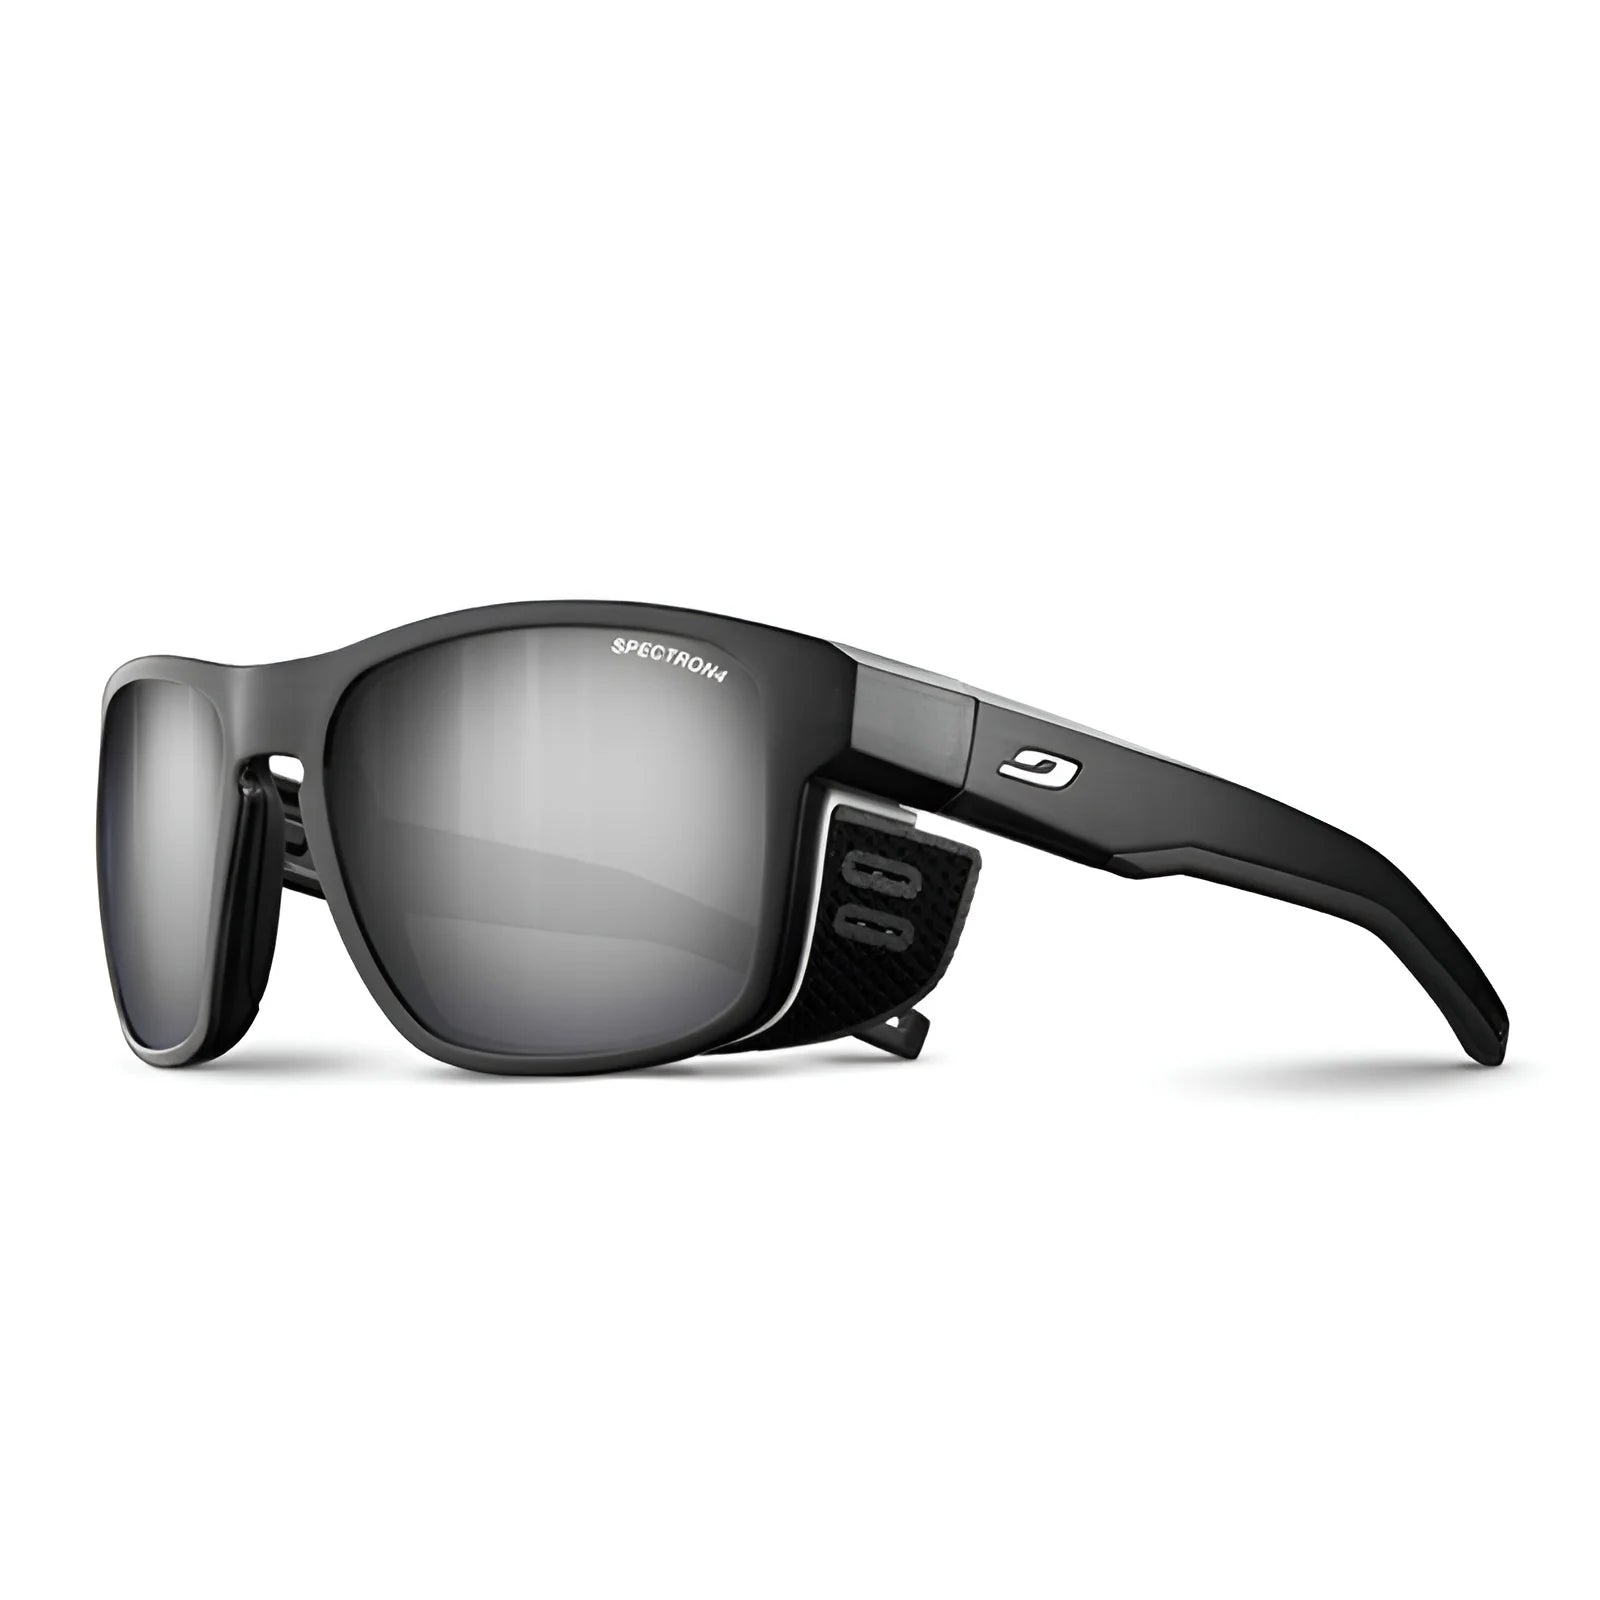 Julbo Shield Sunglasses Matte Translucent Black / White / Spectron 4 (VLT 5%)